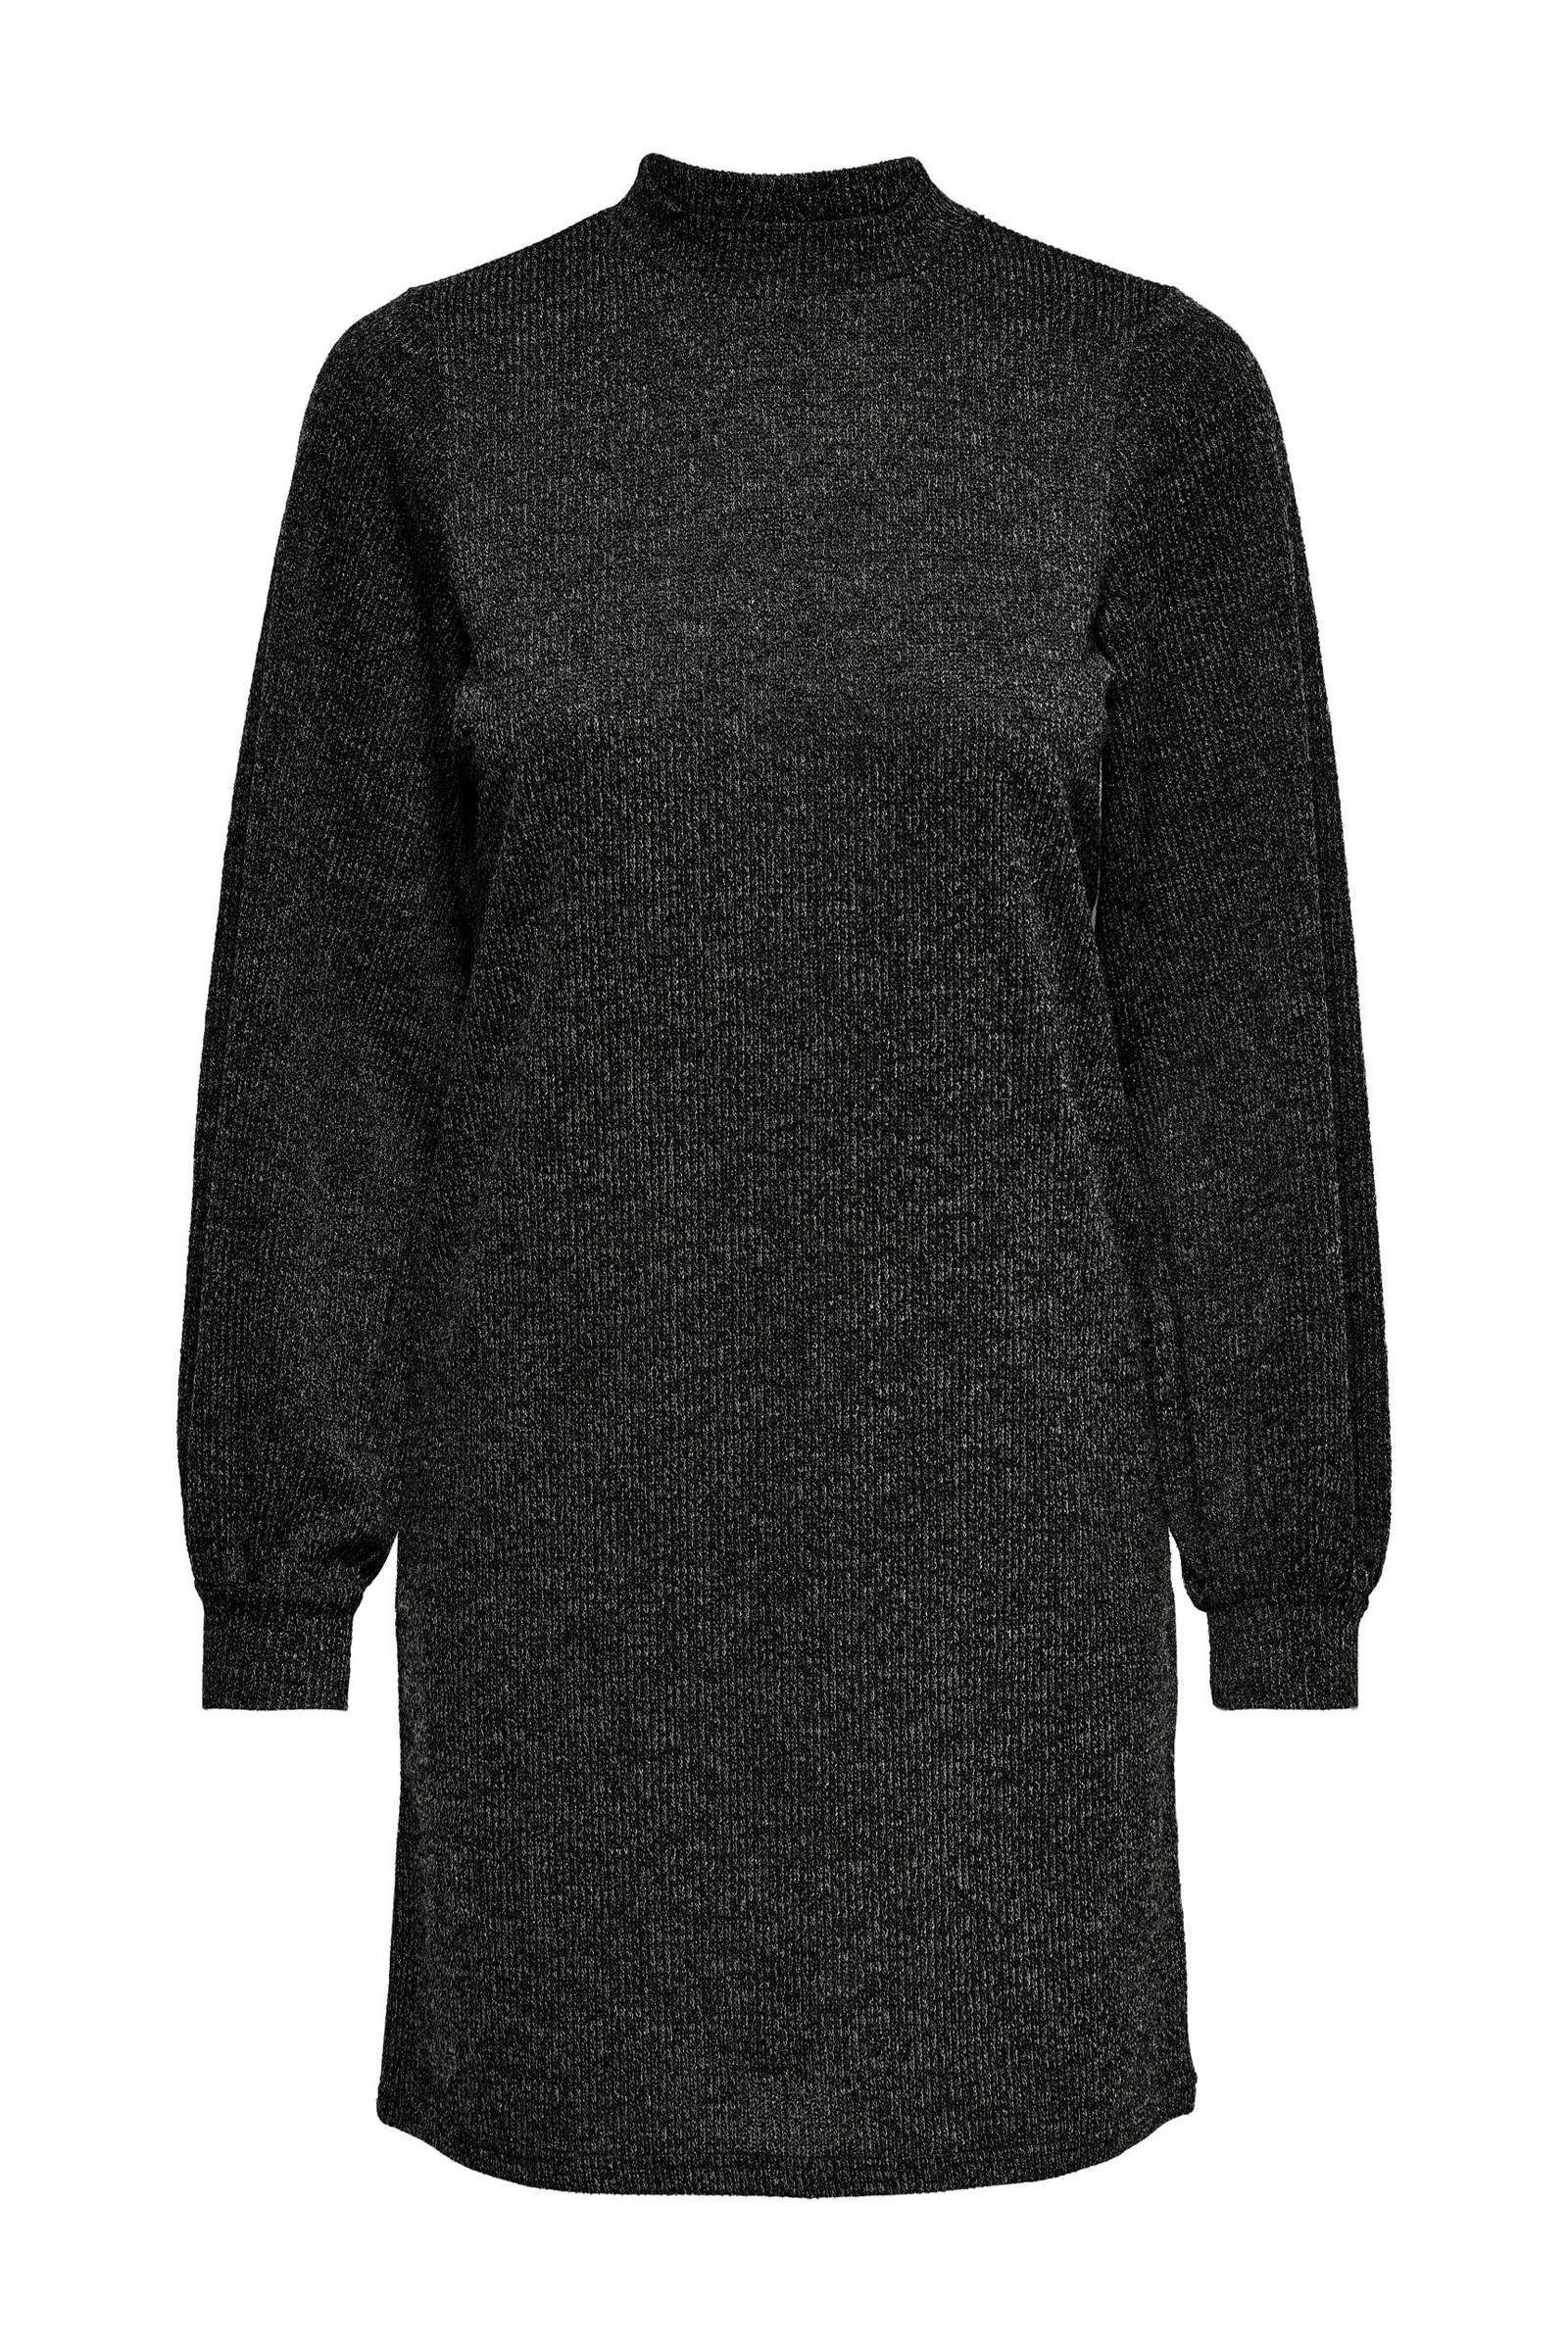 JDY Hoogsluitende, korte, gebreide trui jurk in donkergrijs online kopen